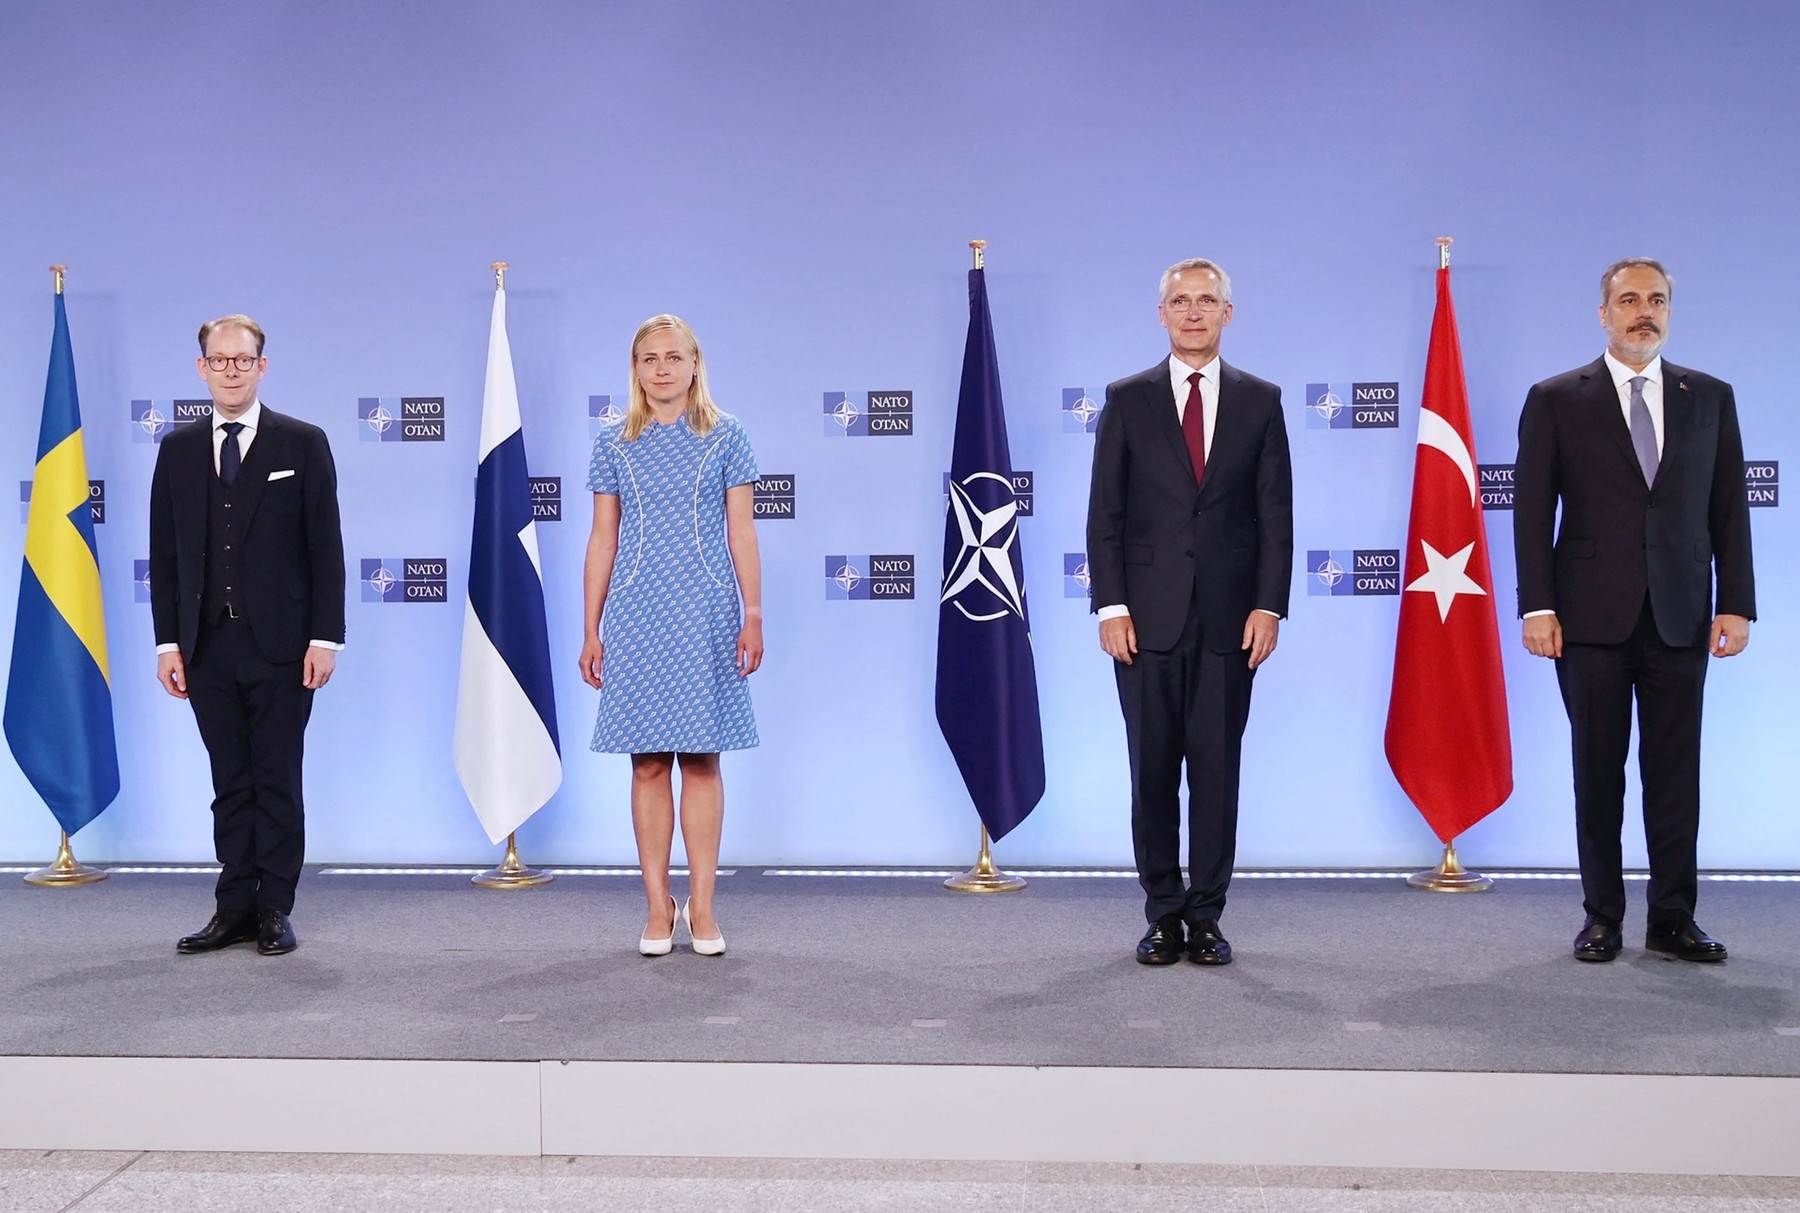  Sastanak predstavnika Švedske, Finske i Turske u sjedištu NATO-a u Bruxellesu 